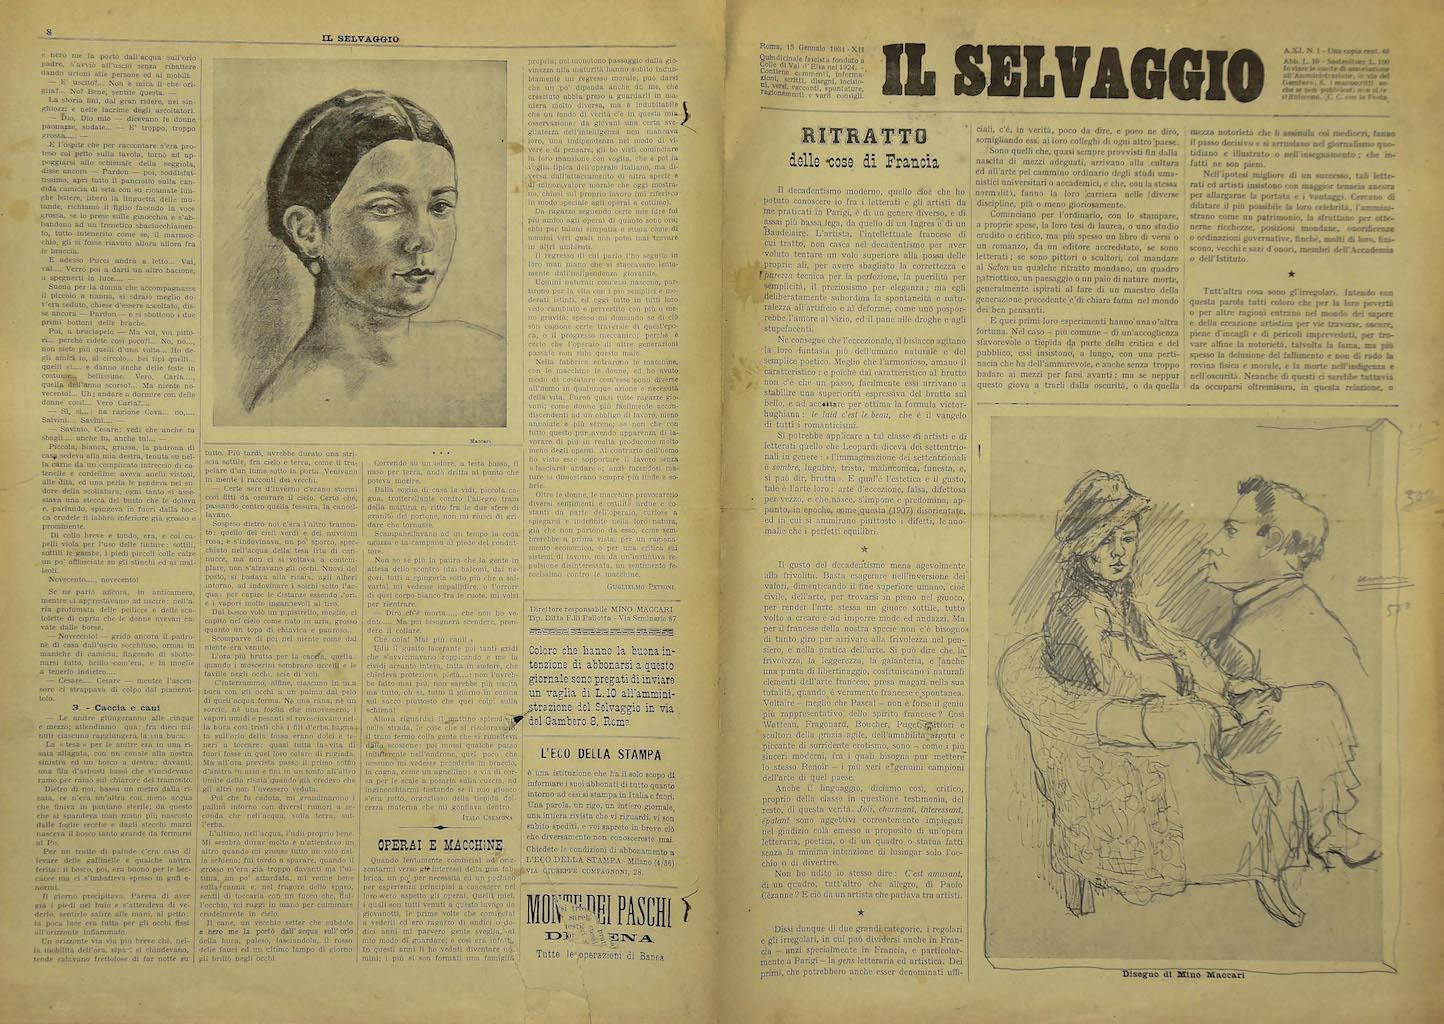 Il Selvaggio #1 - Art Magazine with Engravings by Mino Maccari - 1934